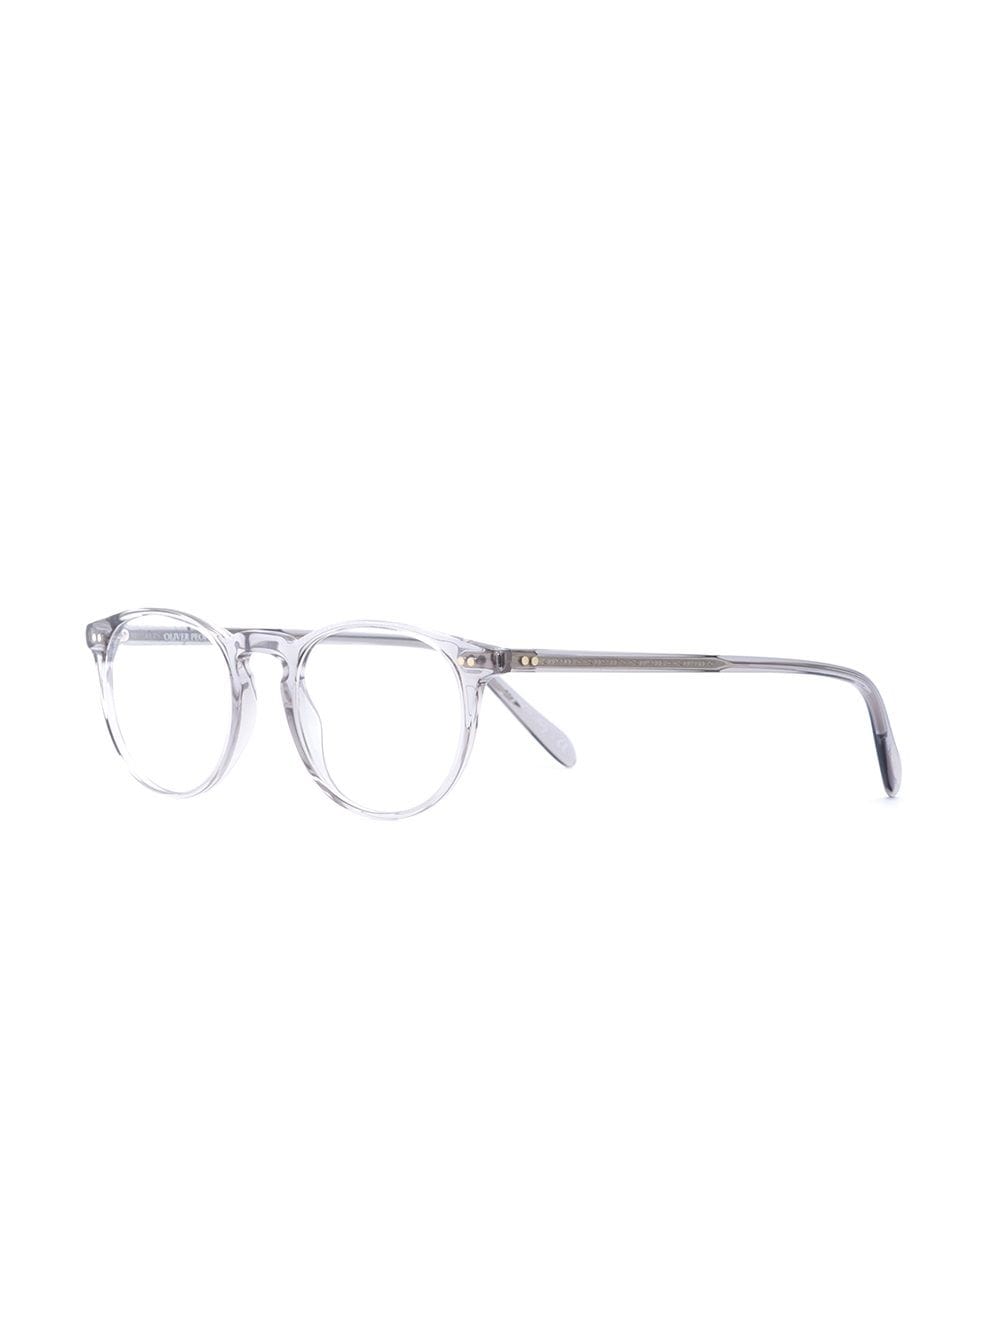 Shop Oliver Peoples 'riley-r' Glasses